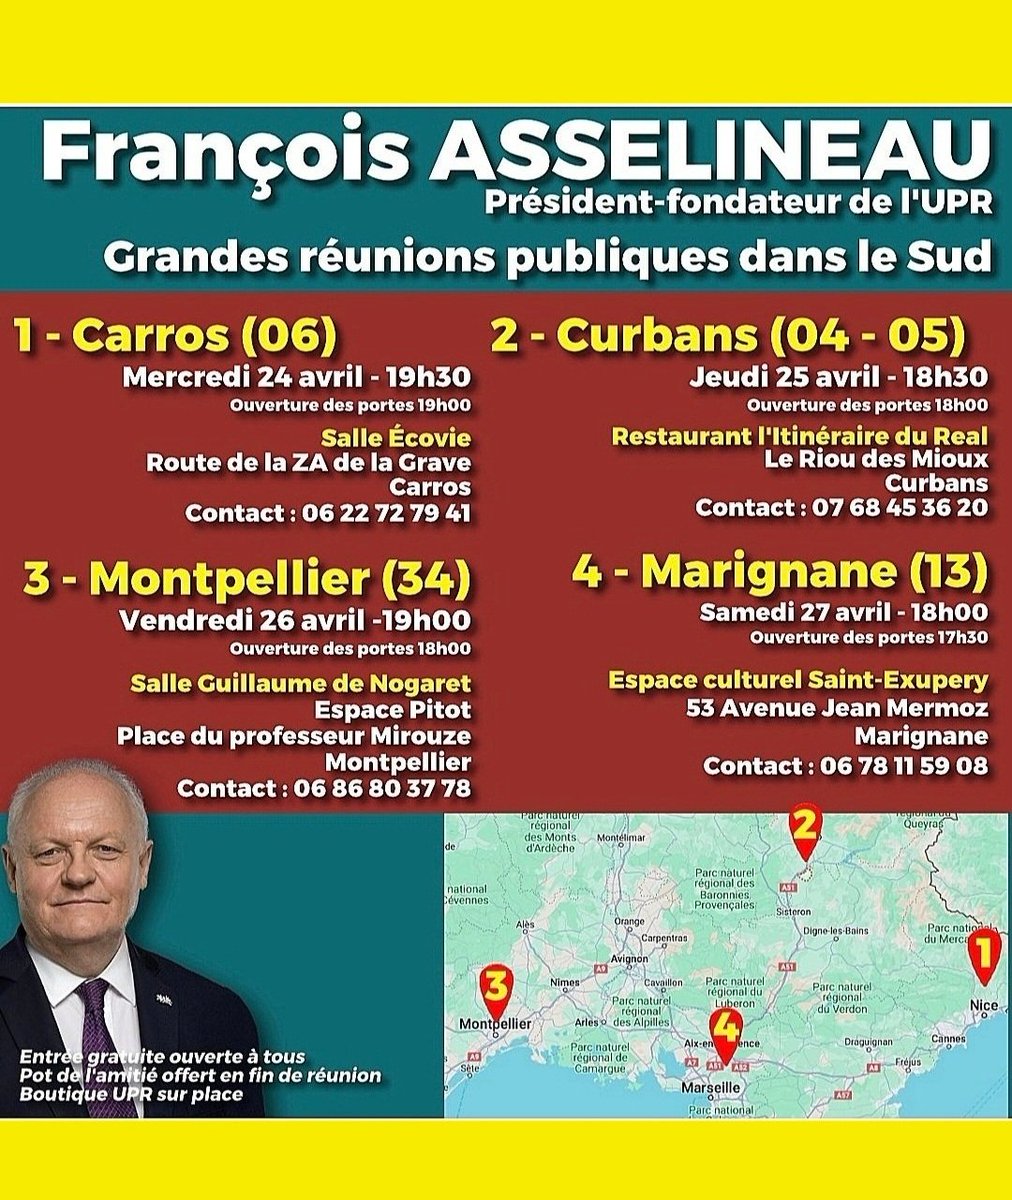 Le 9 juin on envoie un maximum de députés #UPR avec @f_asselineau au #ParlementEuropéen .
Il en va de nos libertés !
Redonner sa souveraineté à la #France !
Regardez #UPRTV et faites votre opinion !